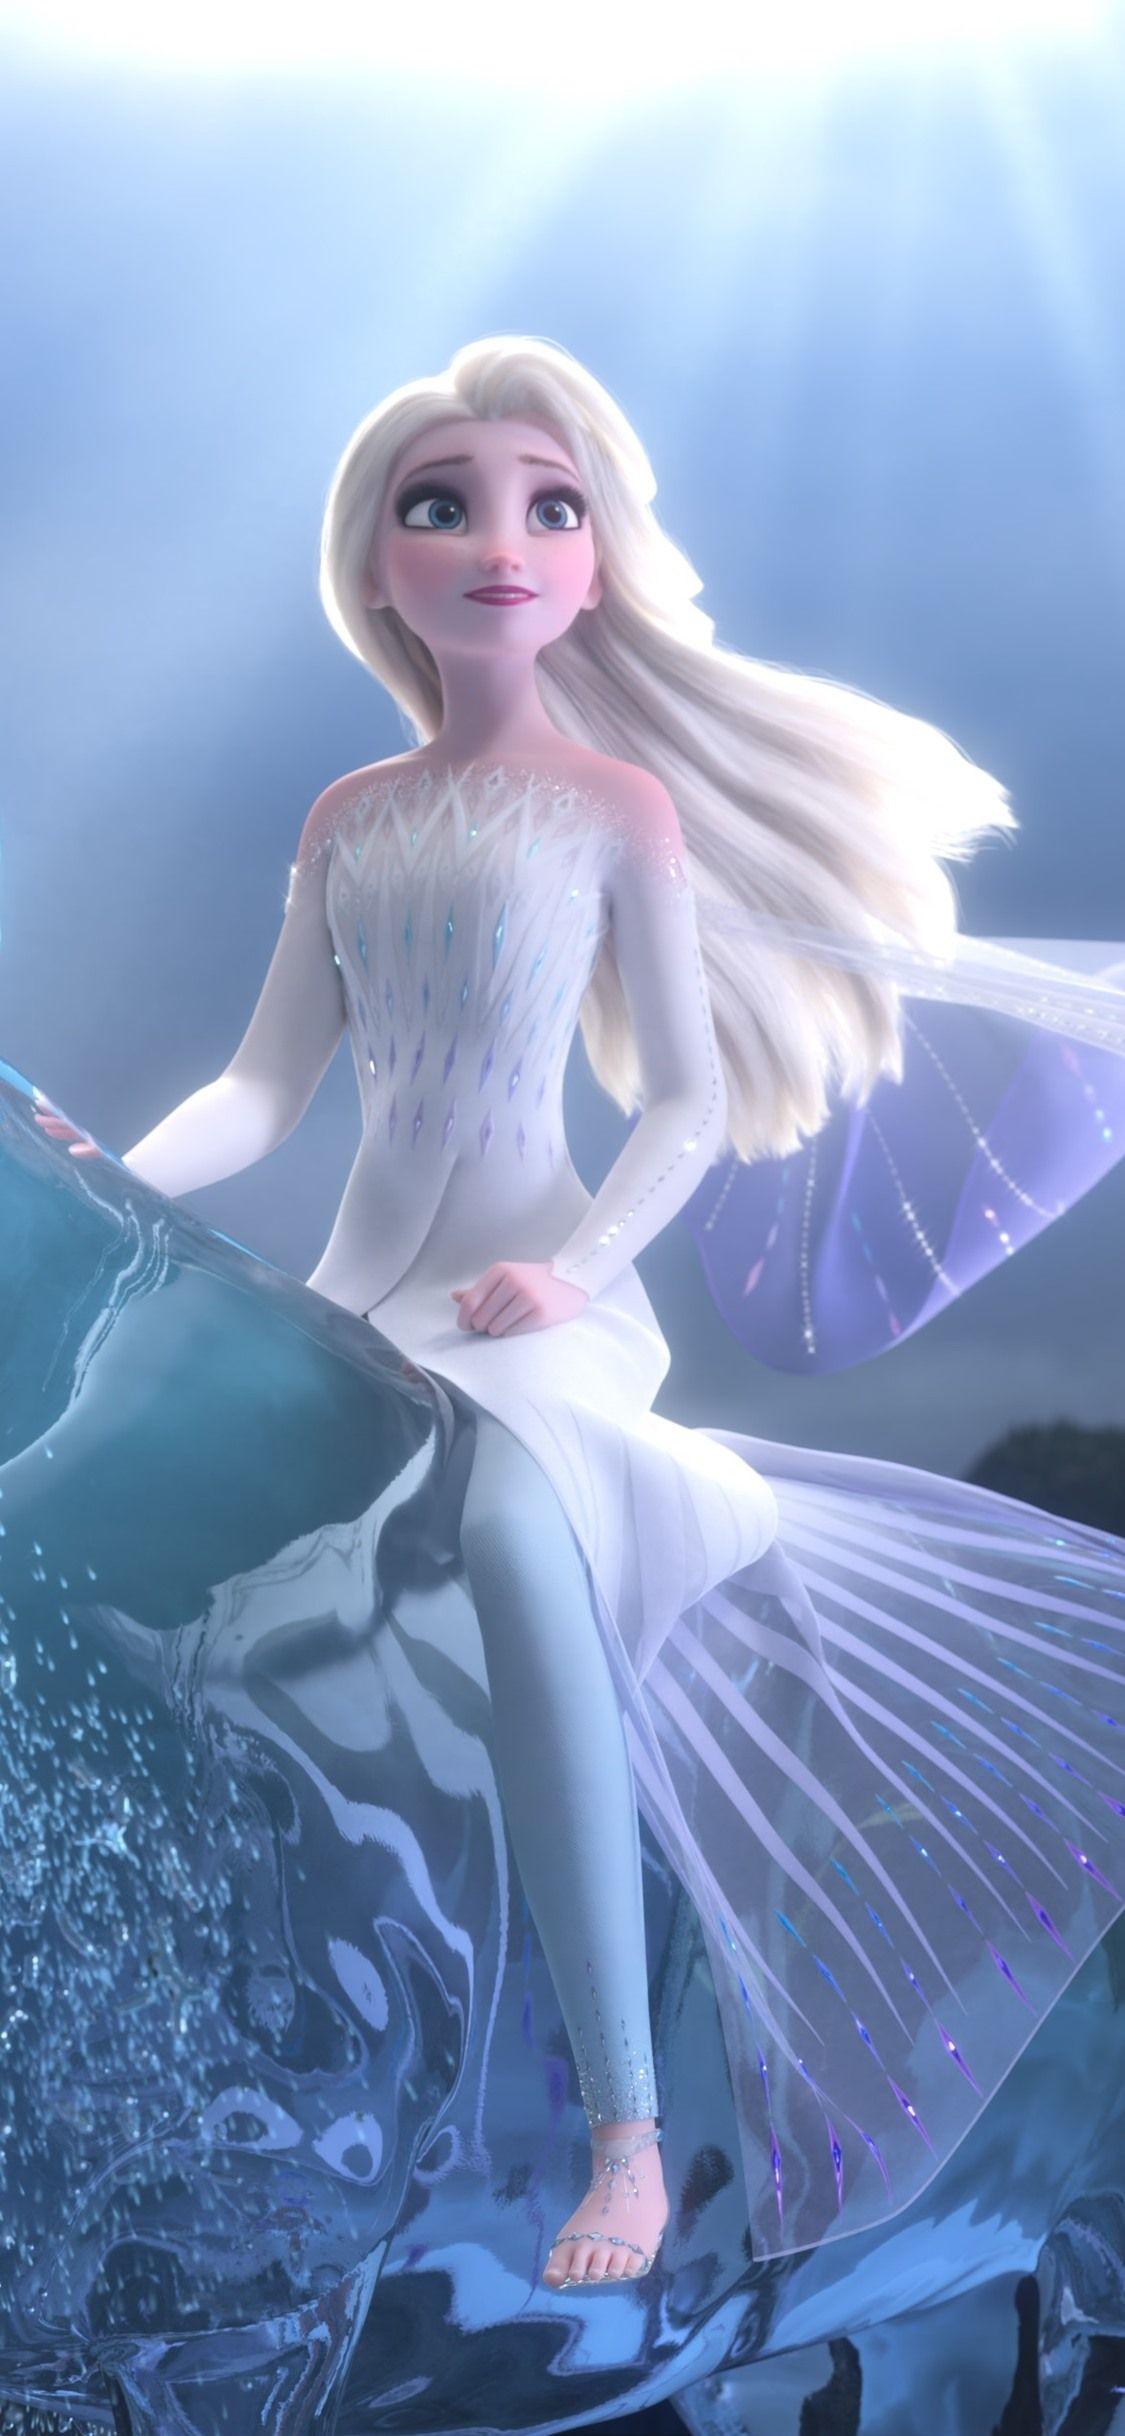 Với hình nền Elsa Frozen 2 sắc nét và đầy màu sắc, người dùng sẽ cảm nhận được sức thu hút của vương quốc băng giá. Một trải nghiệm thú vị trong không gian máy tính hay điện thoại của bạn.